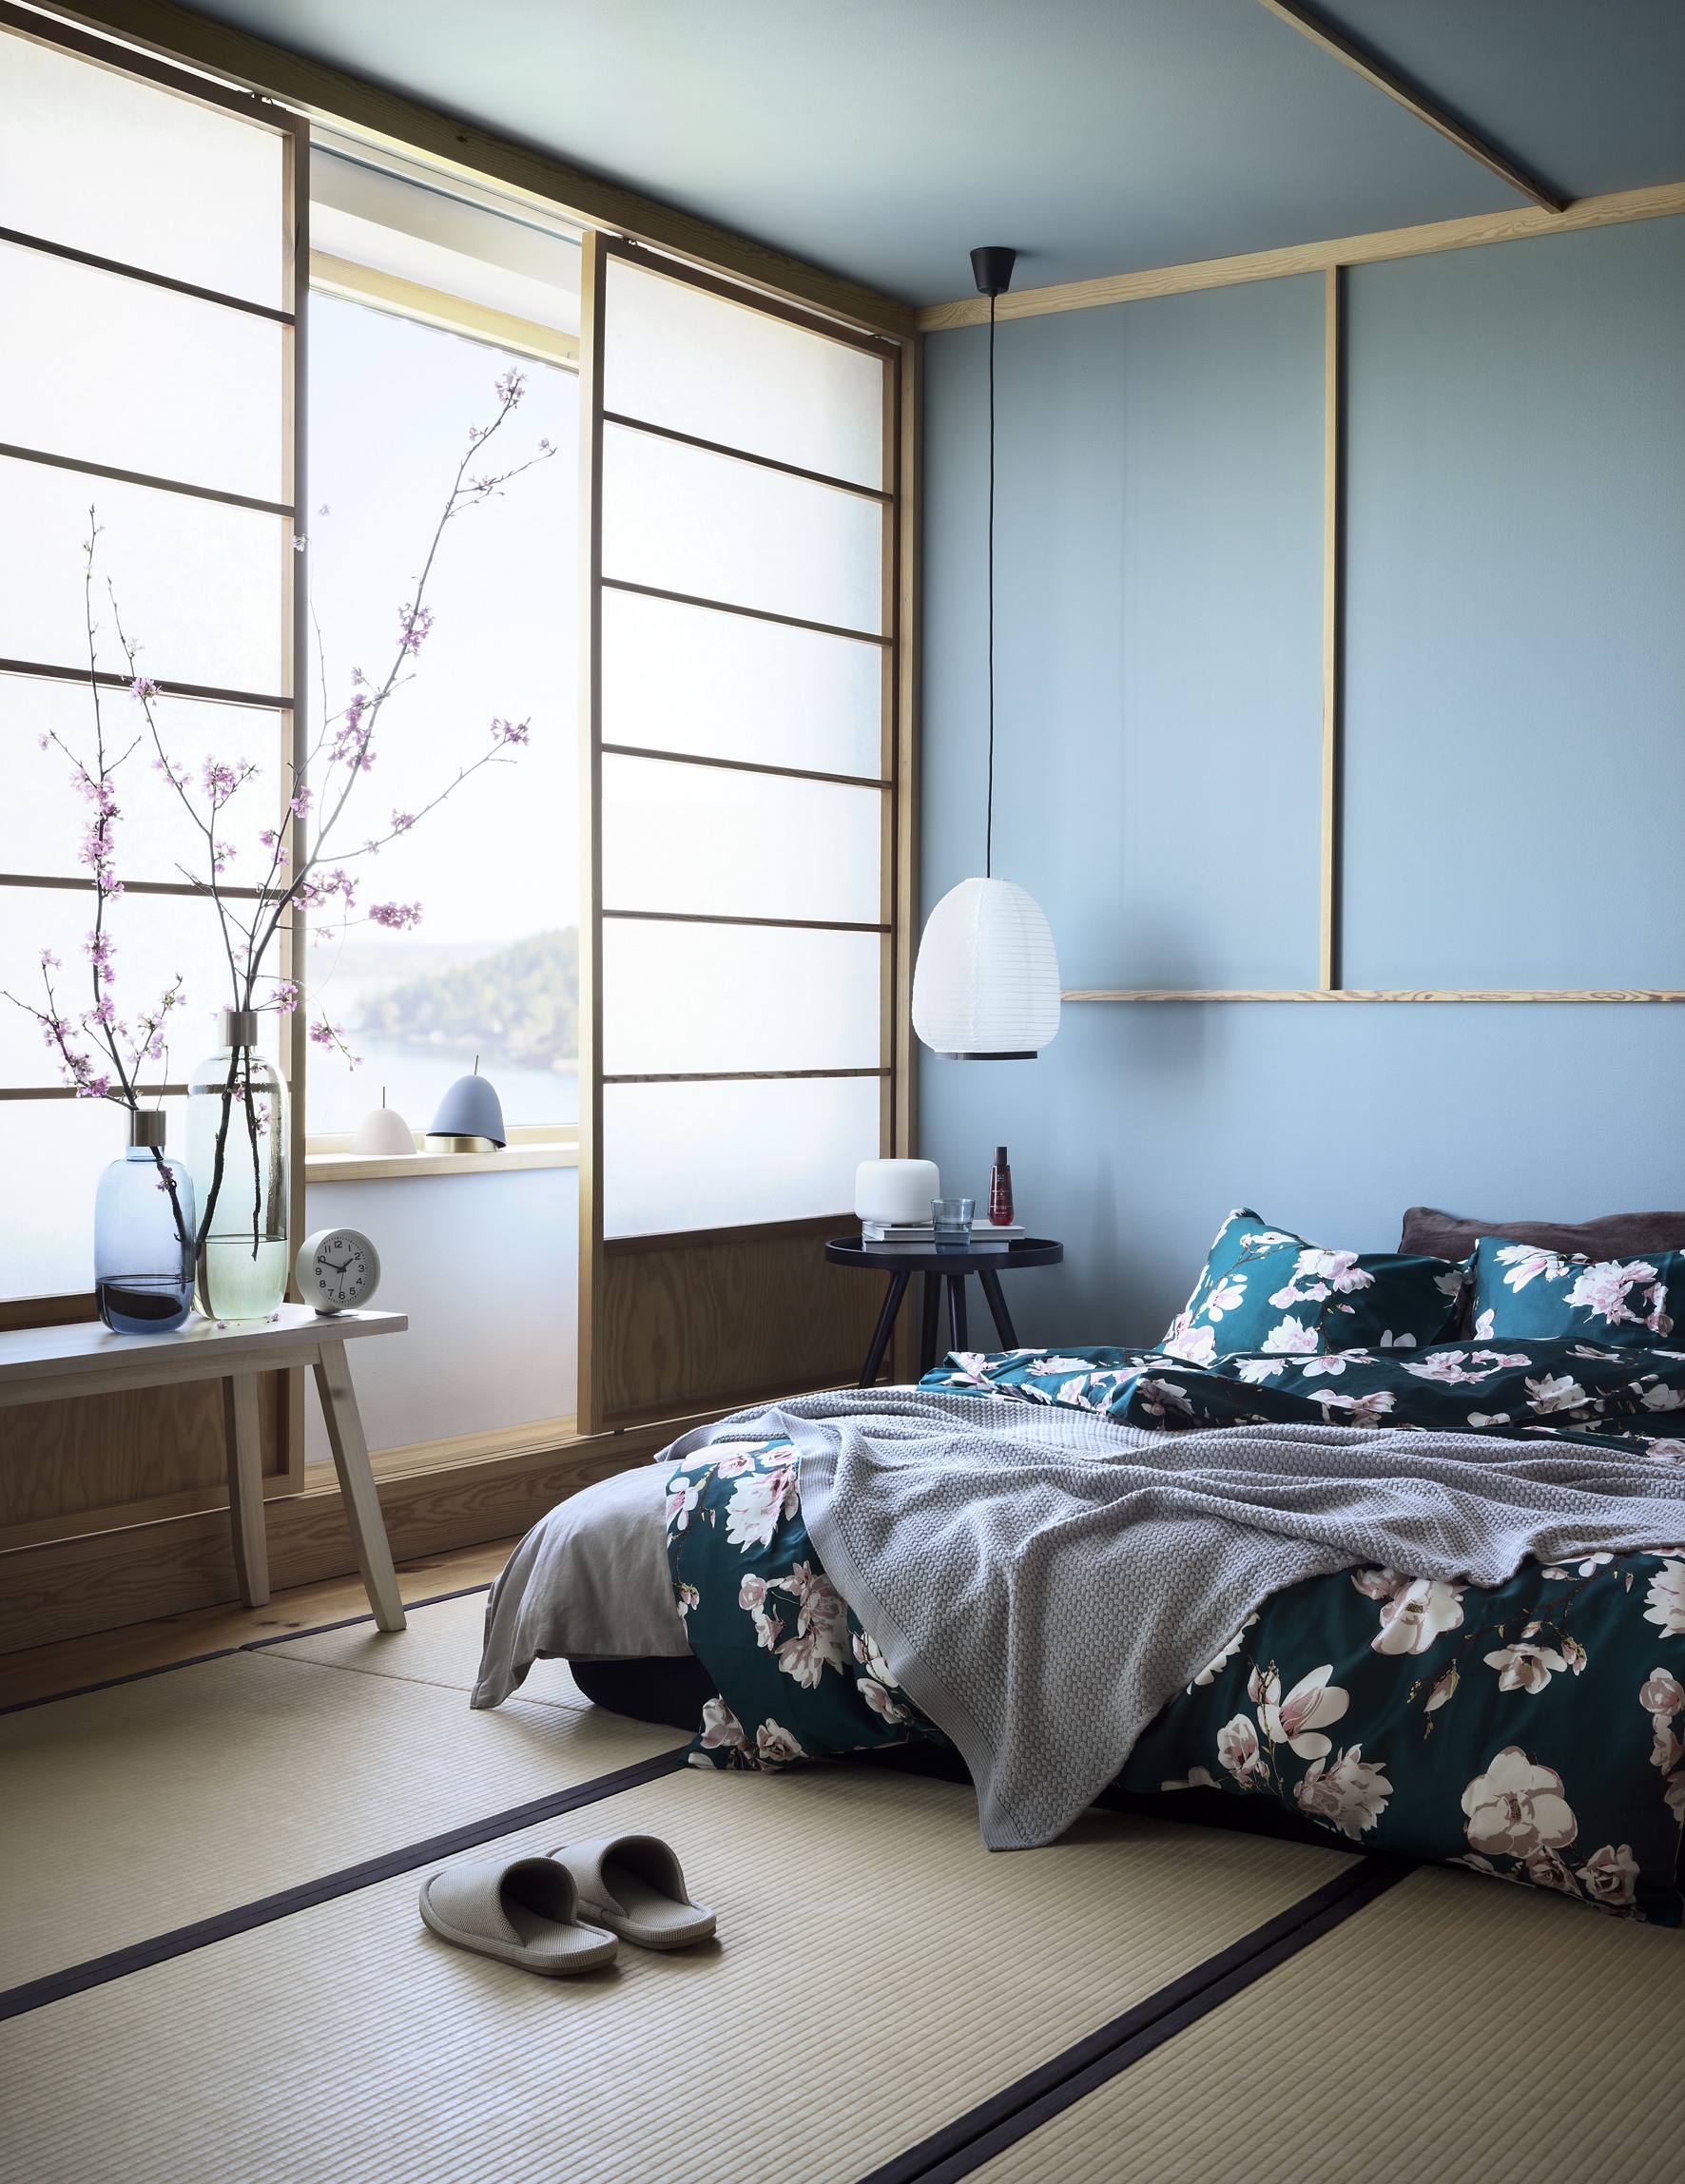 Không phải lúc nào phong cách Zen cũng 'đóng khung' với các gam màu trung tính. Thi thoảng, sắc màu êm dịu như xanh lam hoàn toàn phù hợp cho phòng ngủ, thêm vào những phụ kiện trang trí tinh tế như đèn thả trần, lọ thủy tinh duyên dáng.